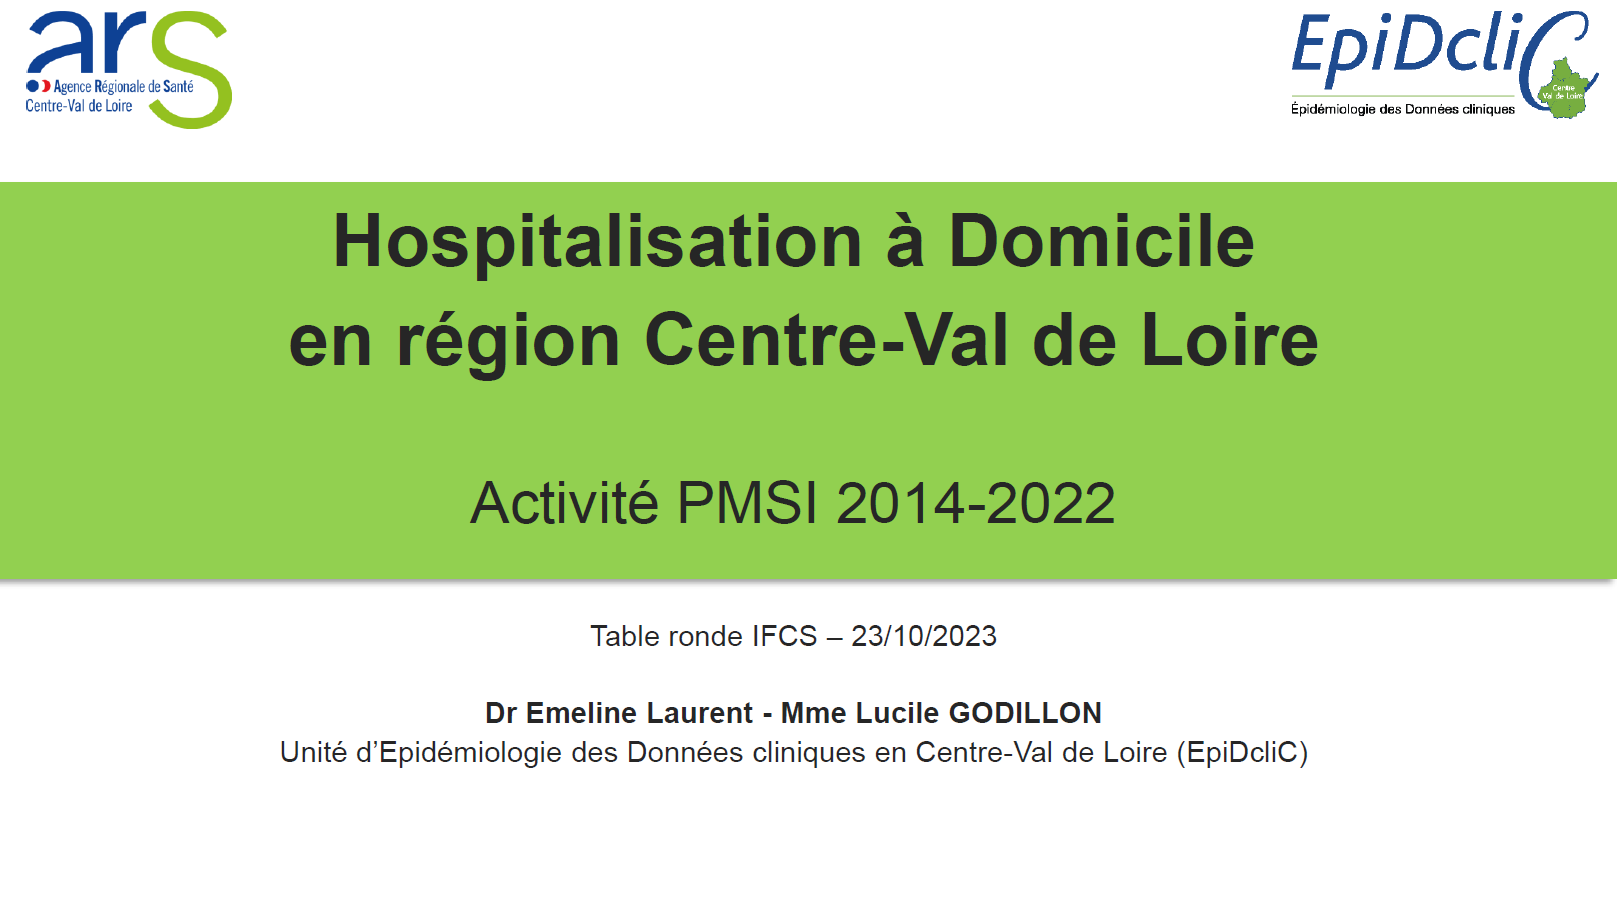 Hospitalisation à domicile en Région Centre-Val de Loire 2014-2022